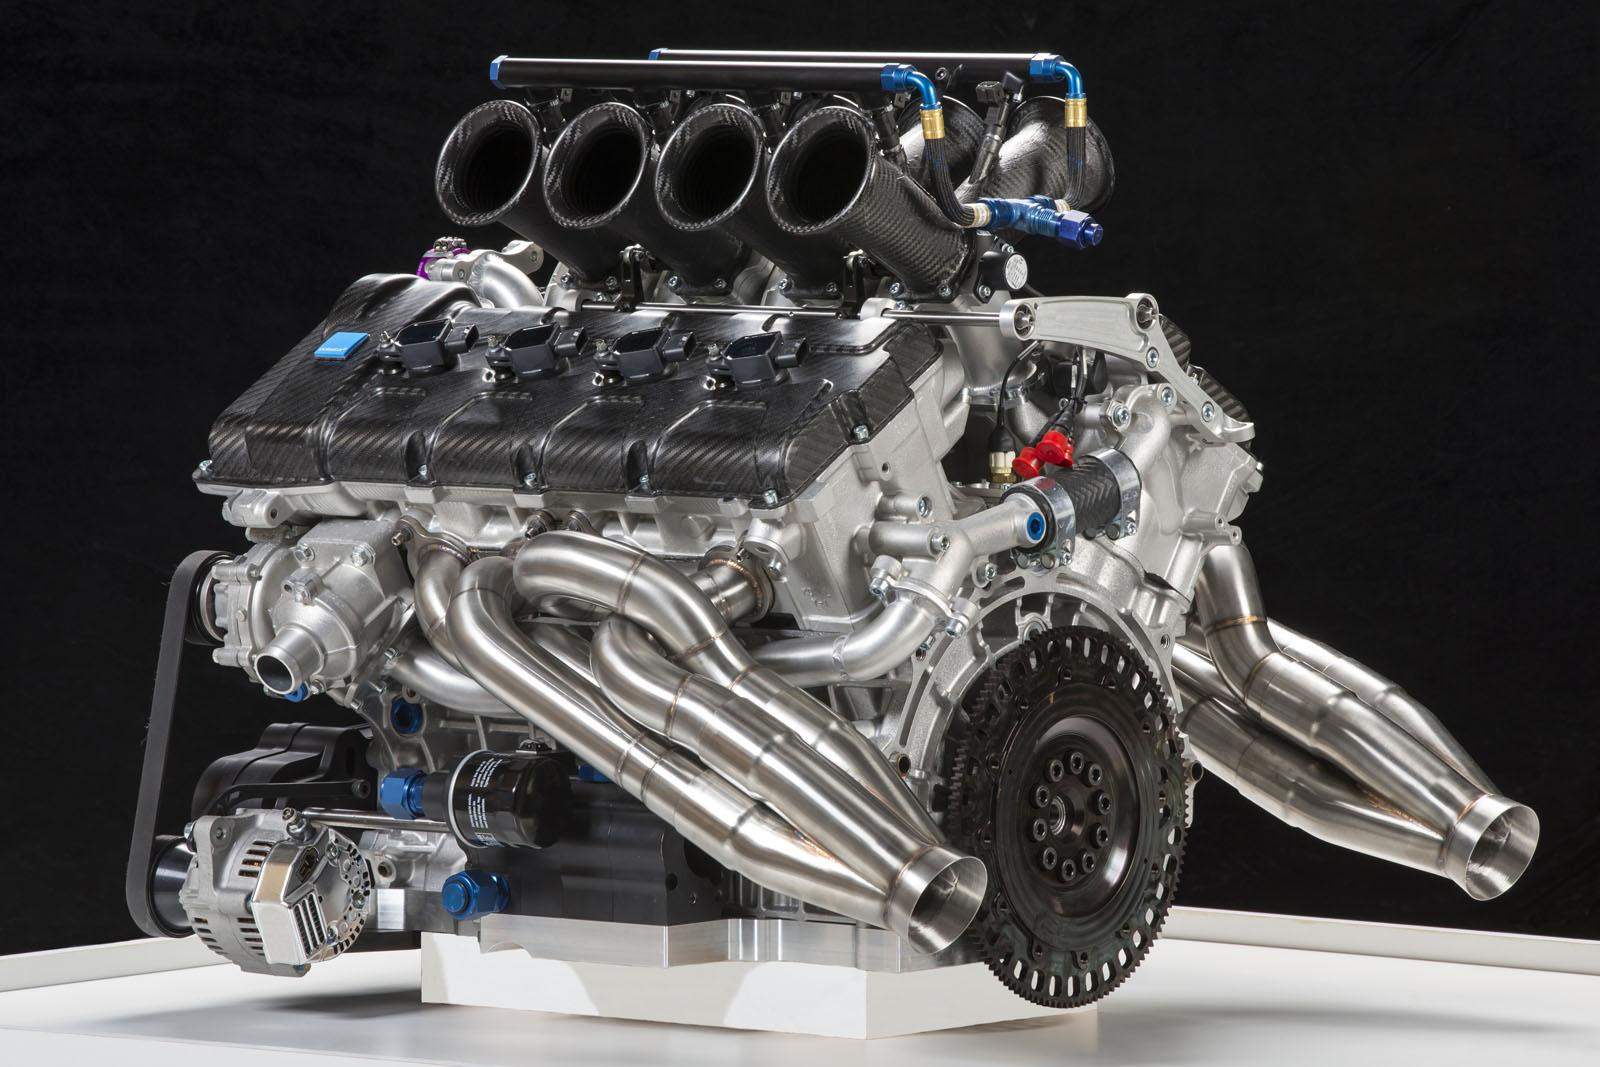 Temp v8. Volvo b8444s engine. Volvo s60 v8 Supercars. S80 v8 мотор. Вольво xc90 с мотором v8.